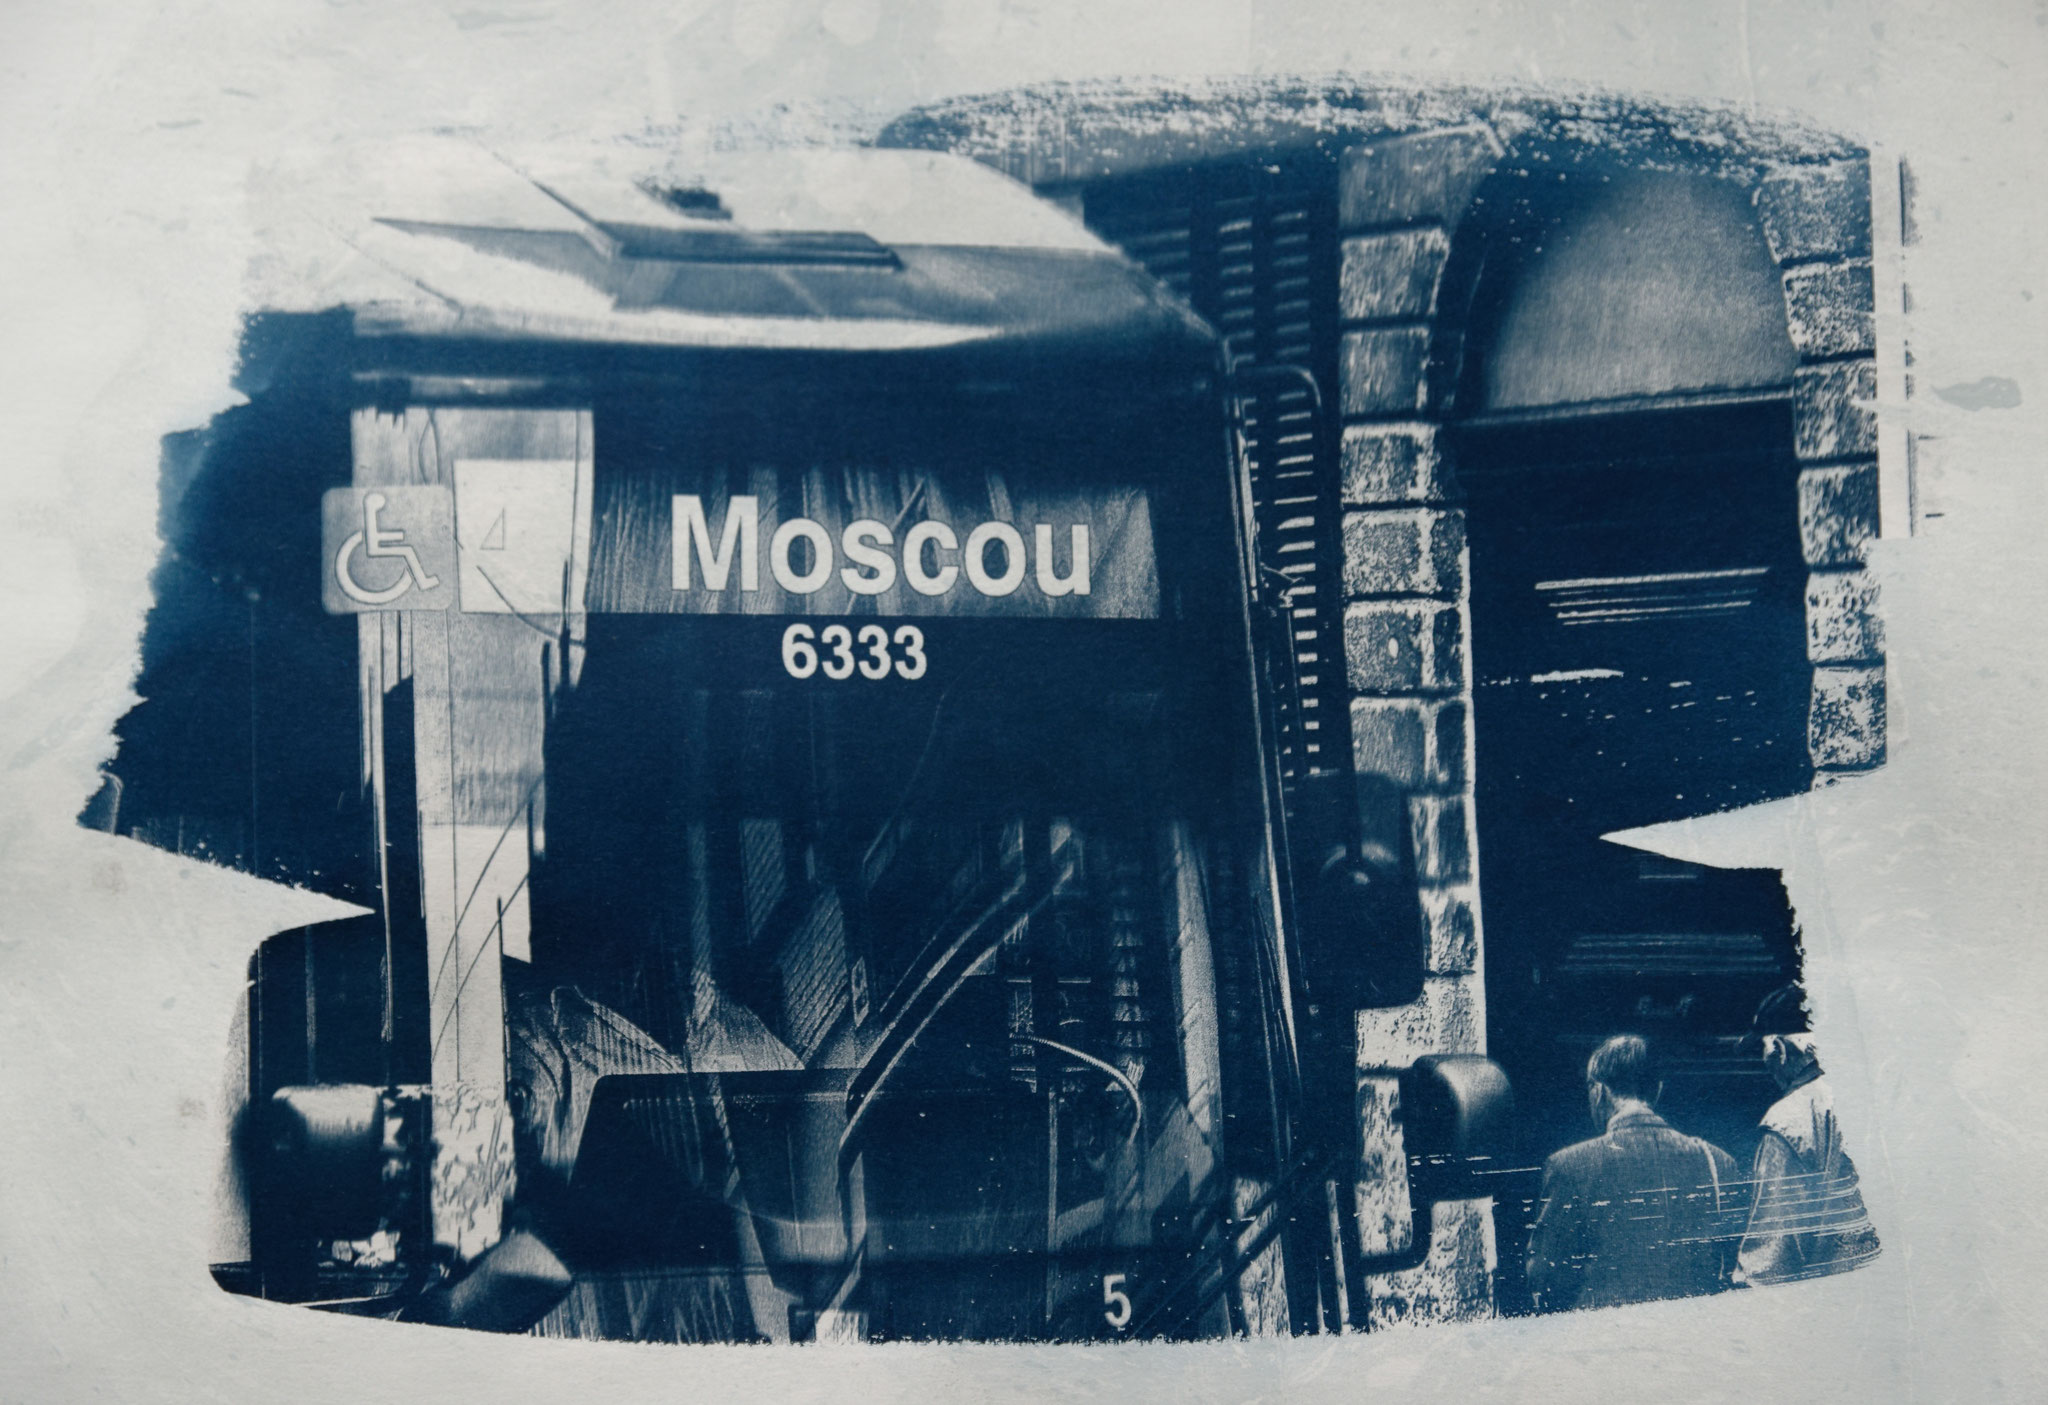 Moscou 6333, Cyanotypie auf Papier, 29x42 cm, 2022